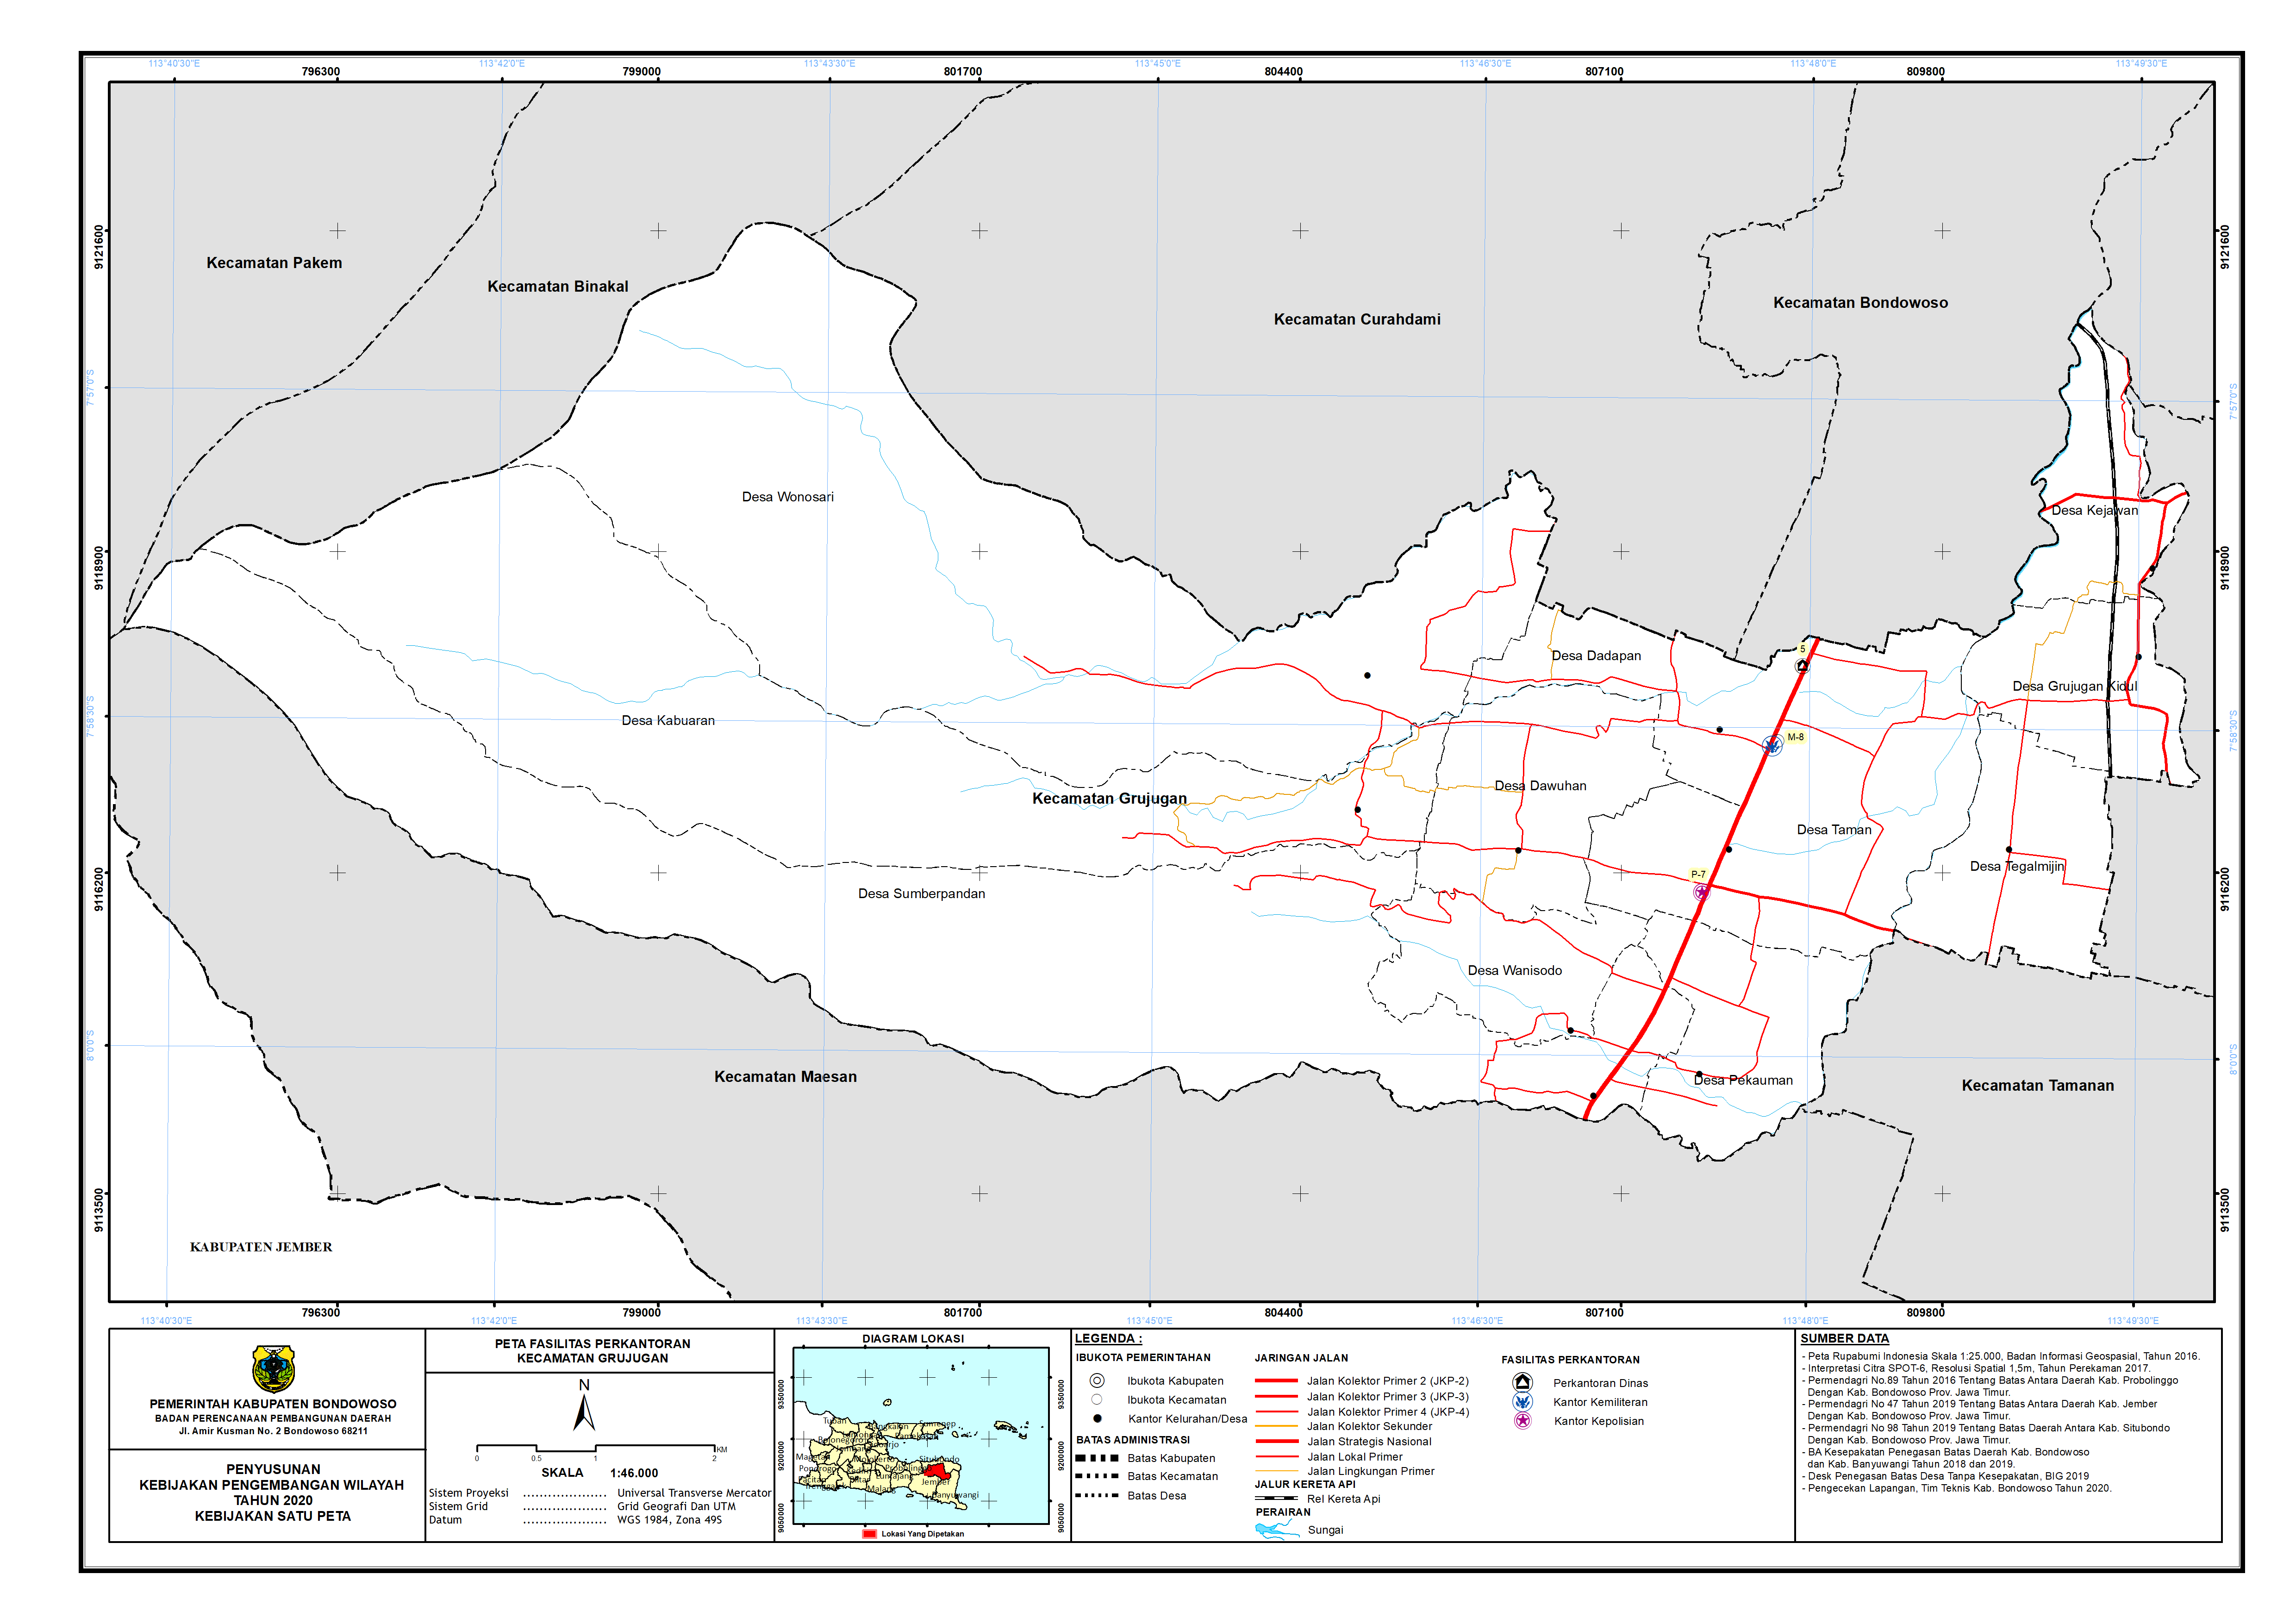 Peta Persebaran Perkantoran Kecamatan Grujugan.png